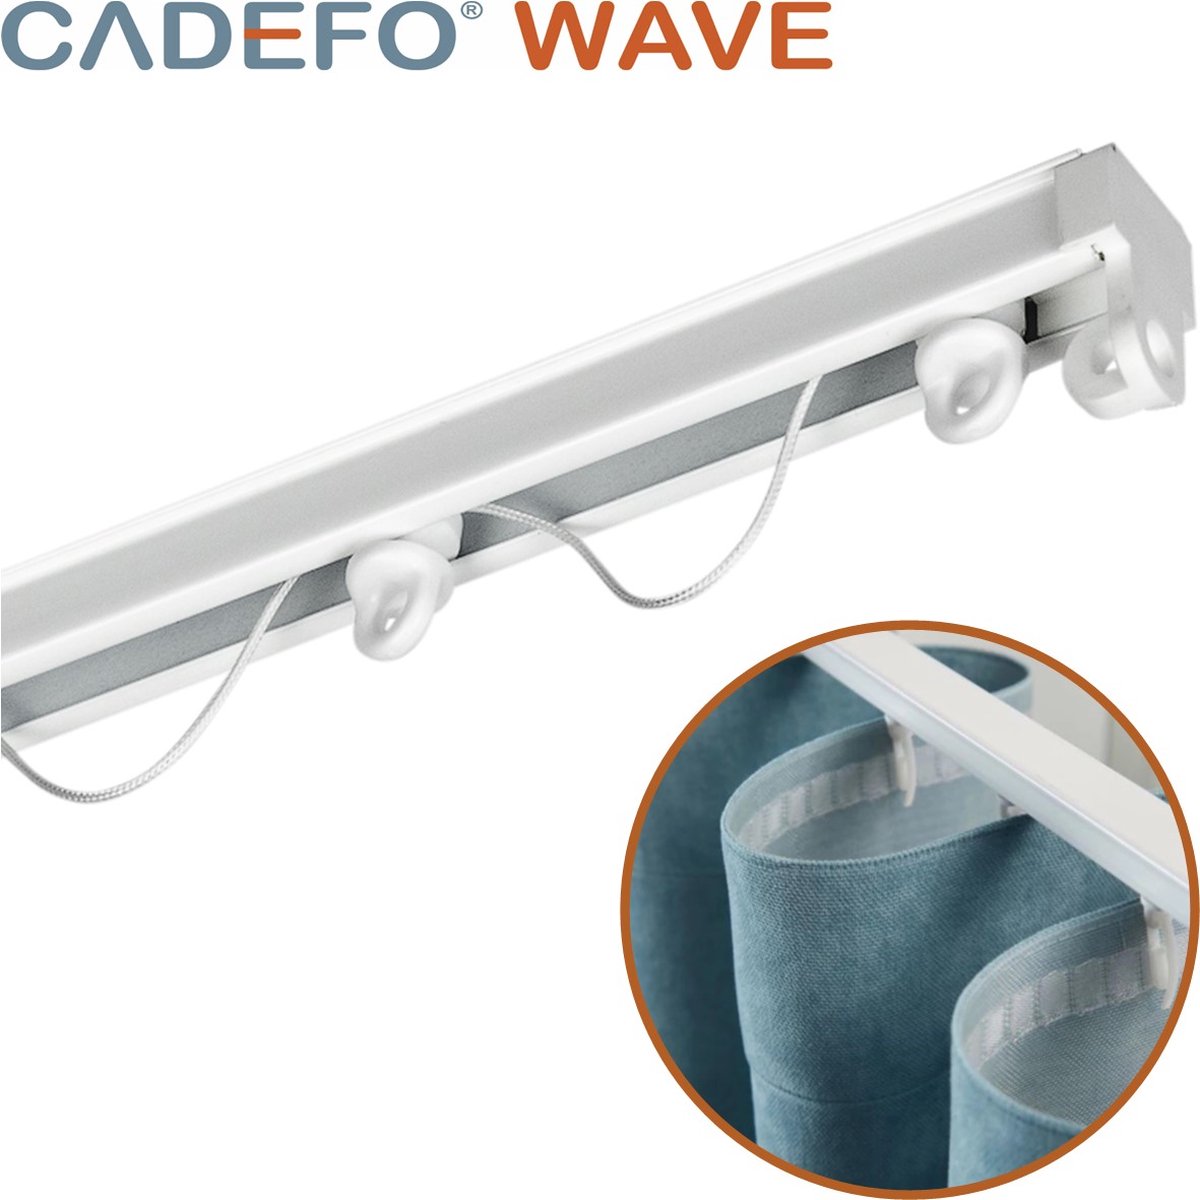 CADEFO WAVE (251 - 300 cm) Gordijnrails - Compleet op maat! - UIT 1 STUK - Leverbaar tot 6 meter - Plafondbevestiging - Lengte 261 cm